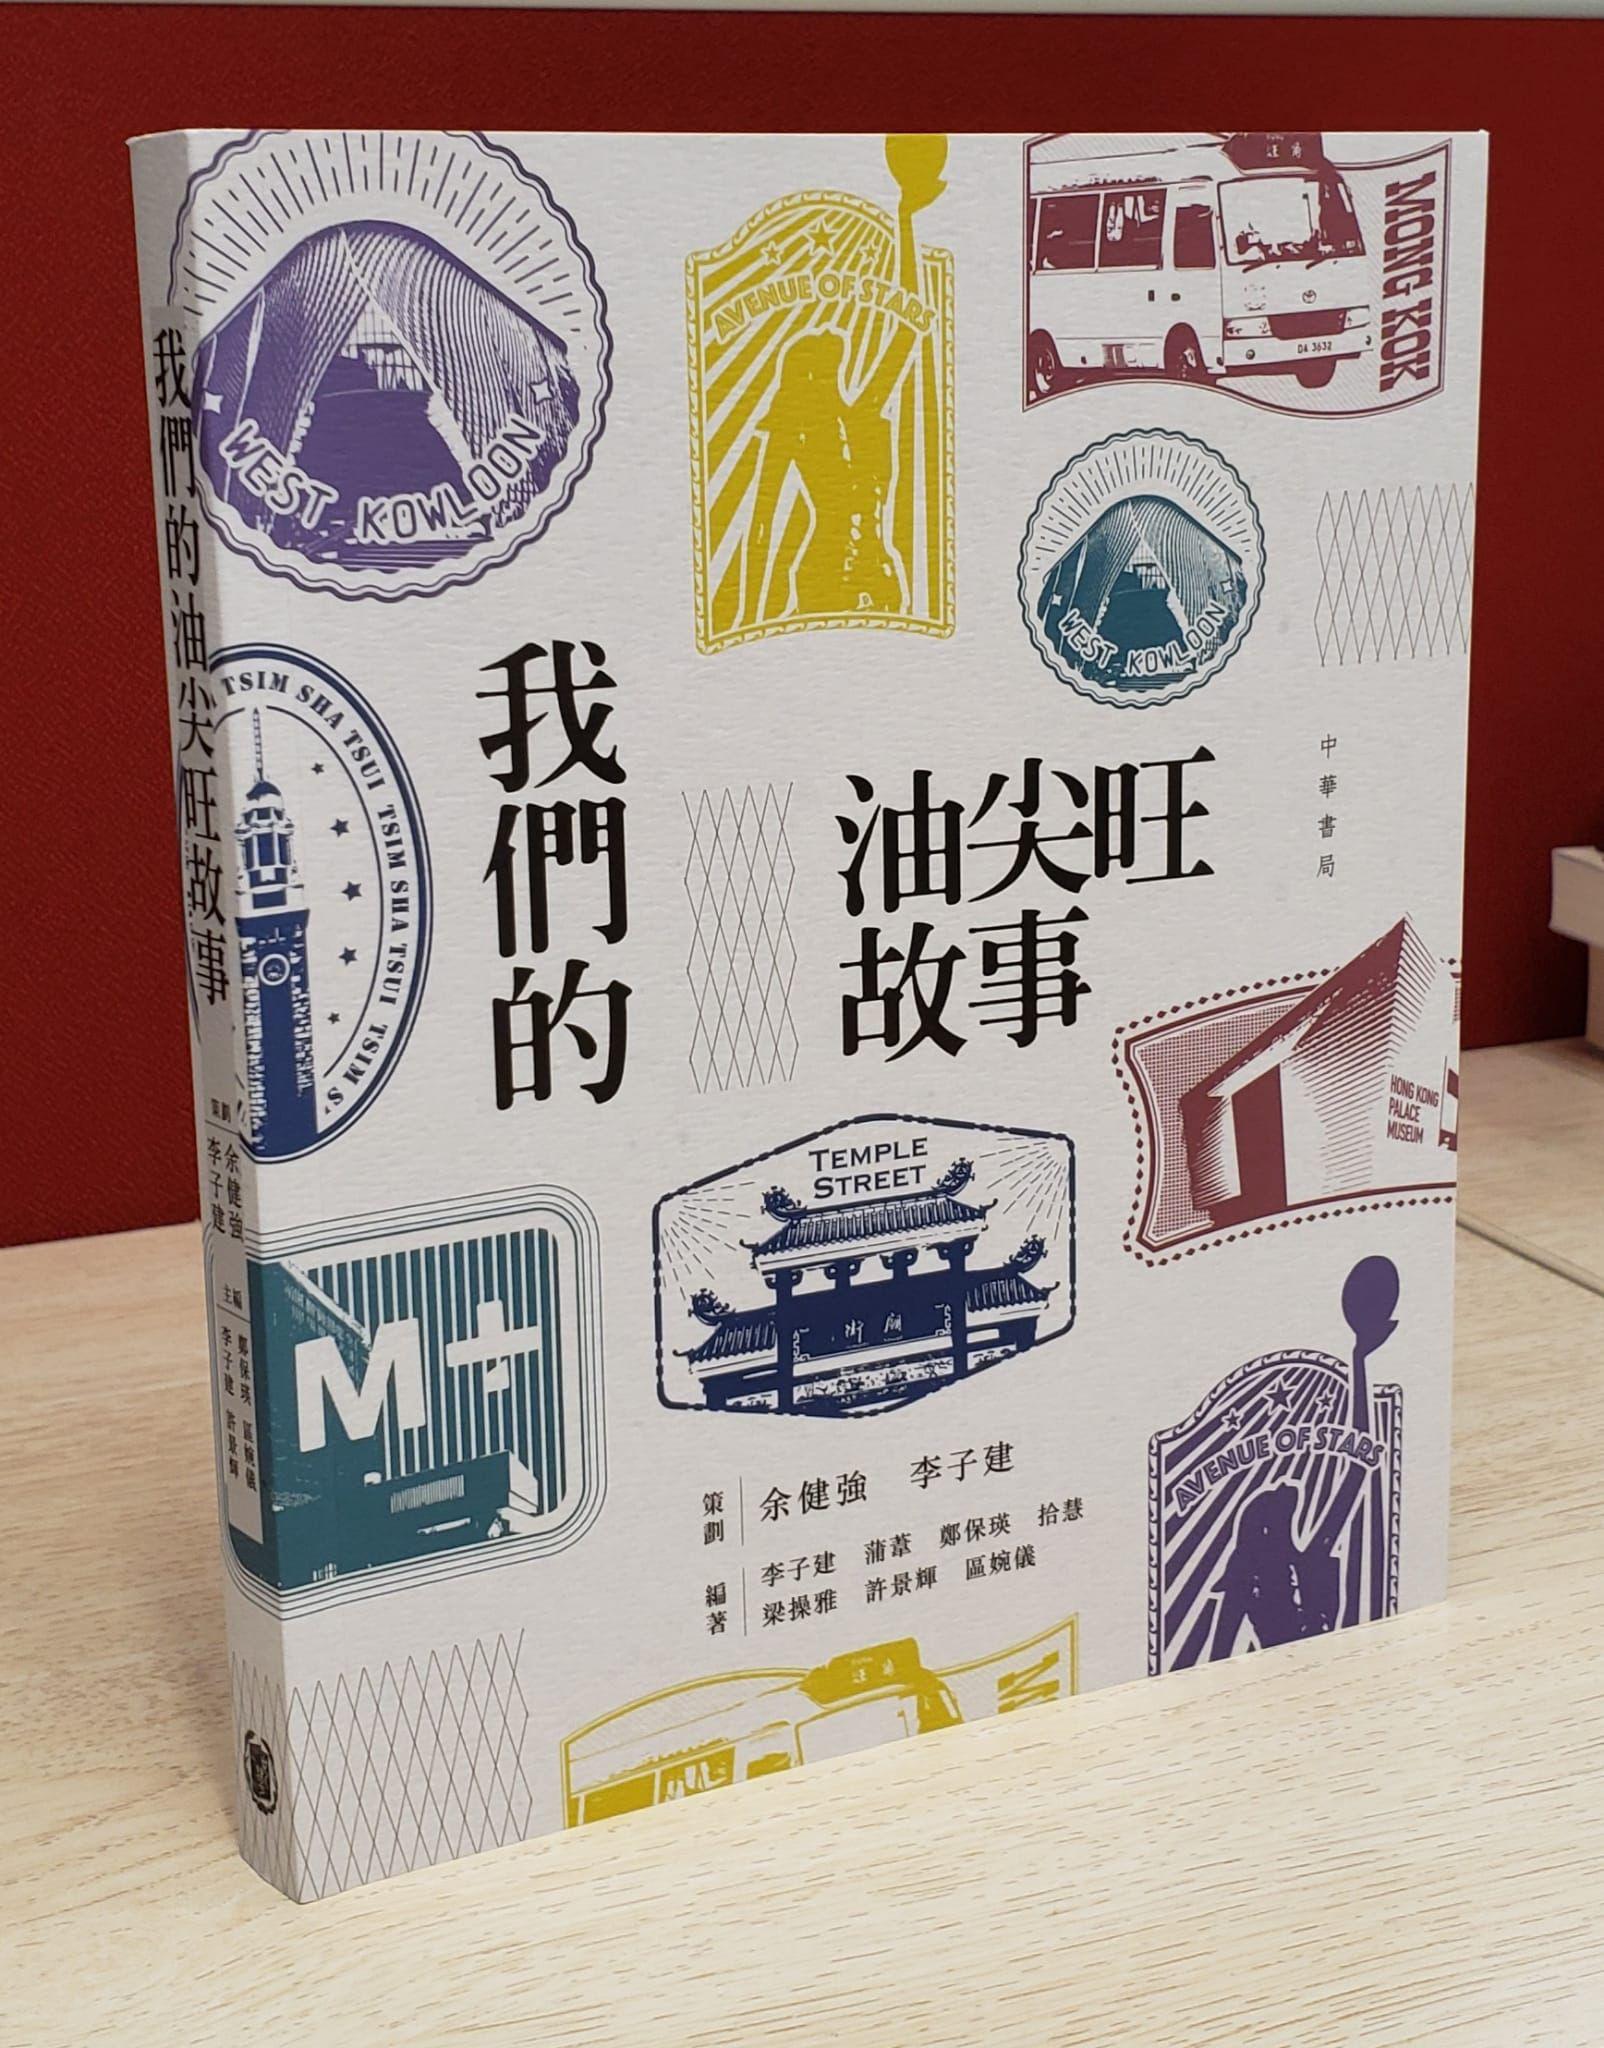 由油尖旺民政事務處和香港教育大學李子建教授團隊共同策劃、中華書局出版的新書《我們的油尖旺故事》已正式發布。圖為《我們的油尖旺故事》一書的封面設計。